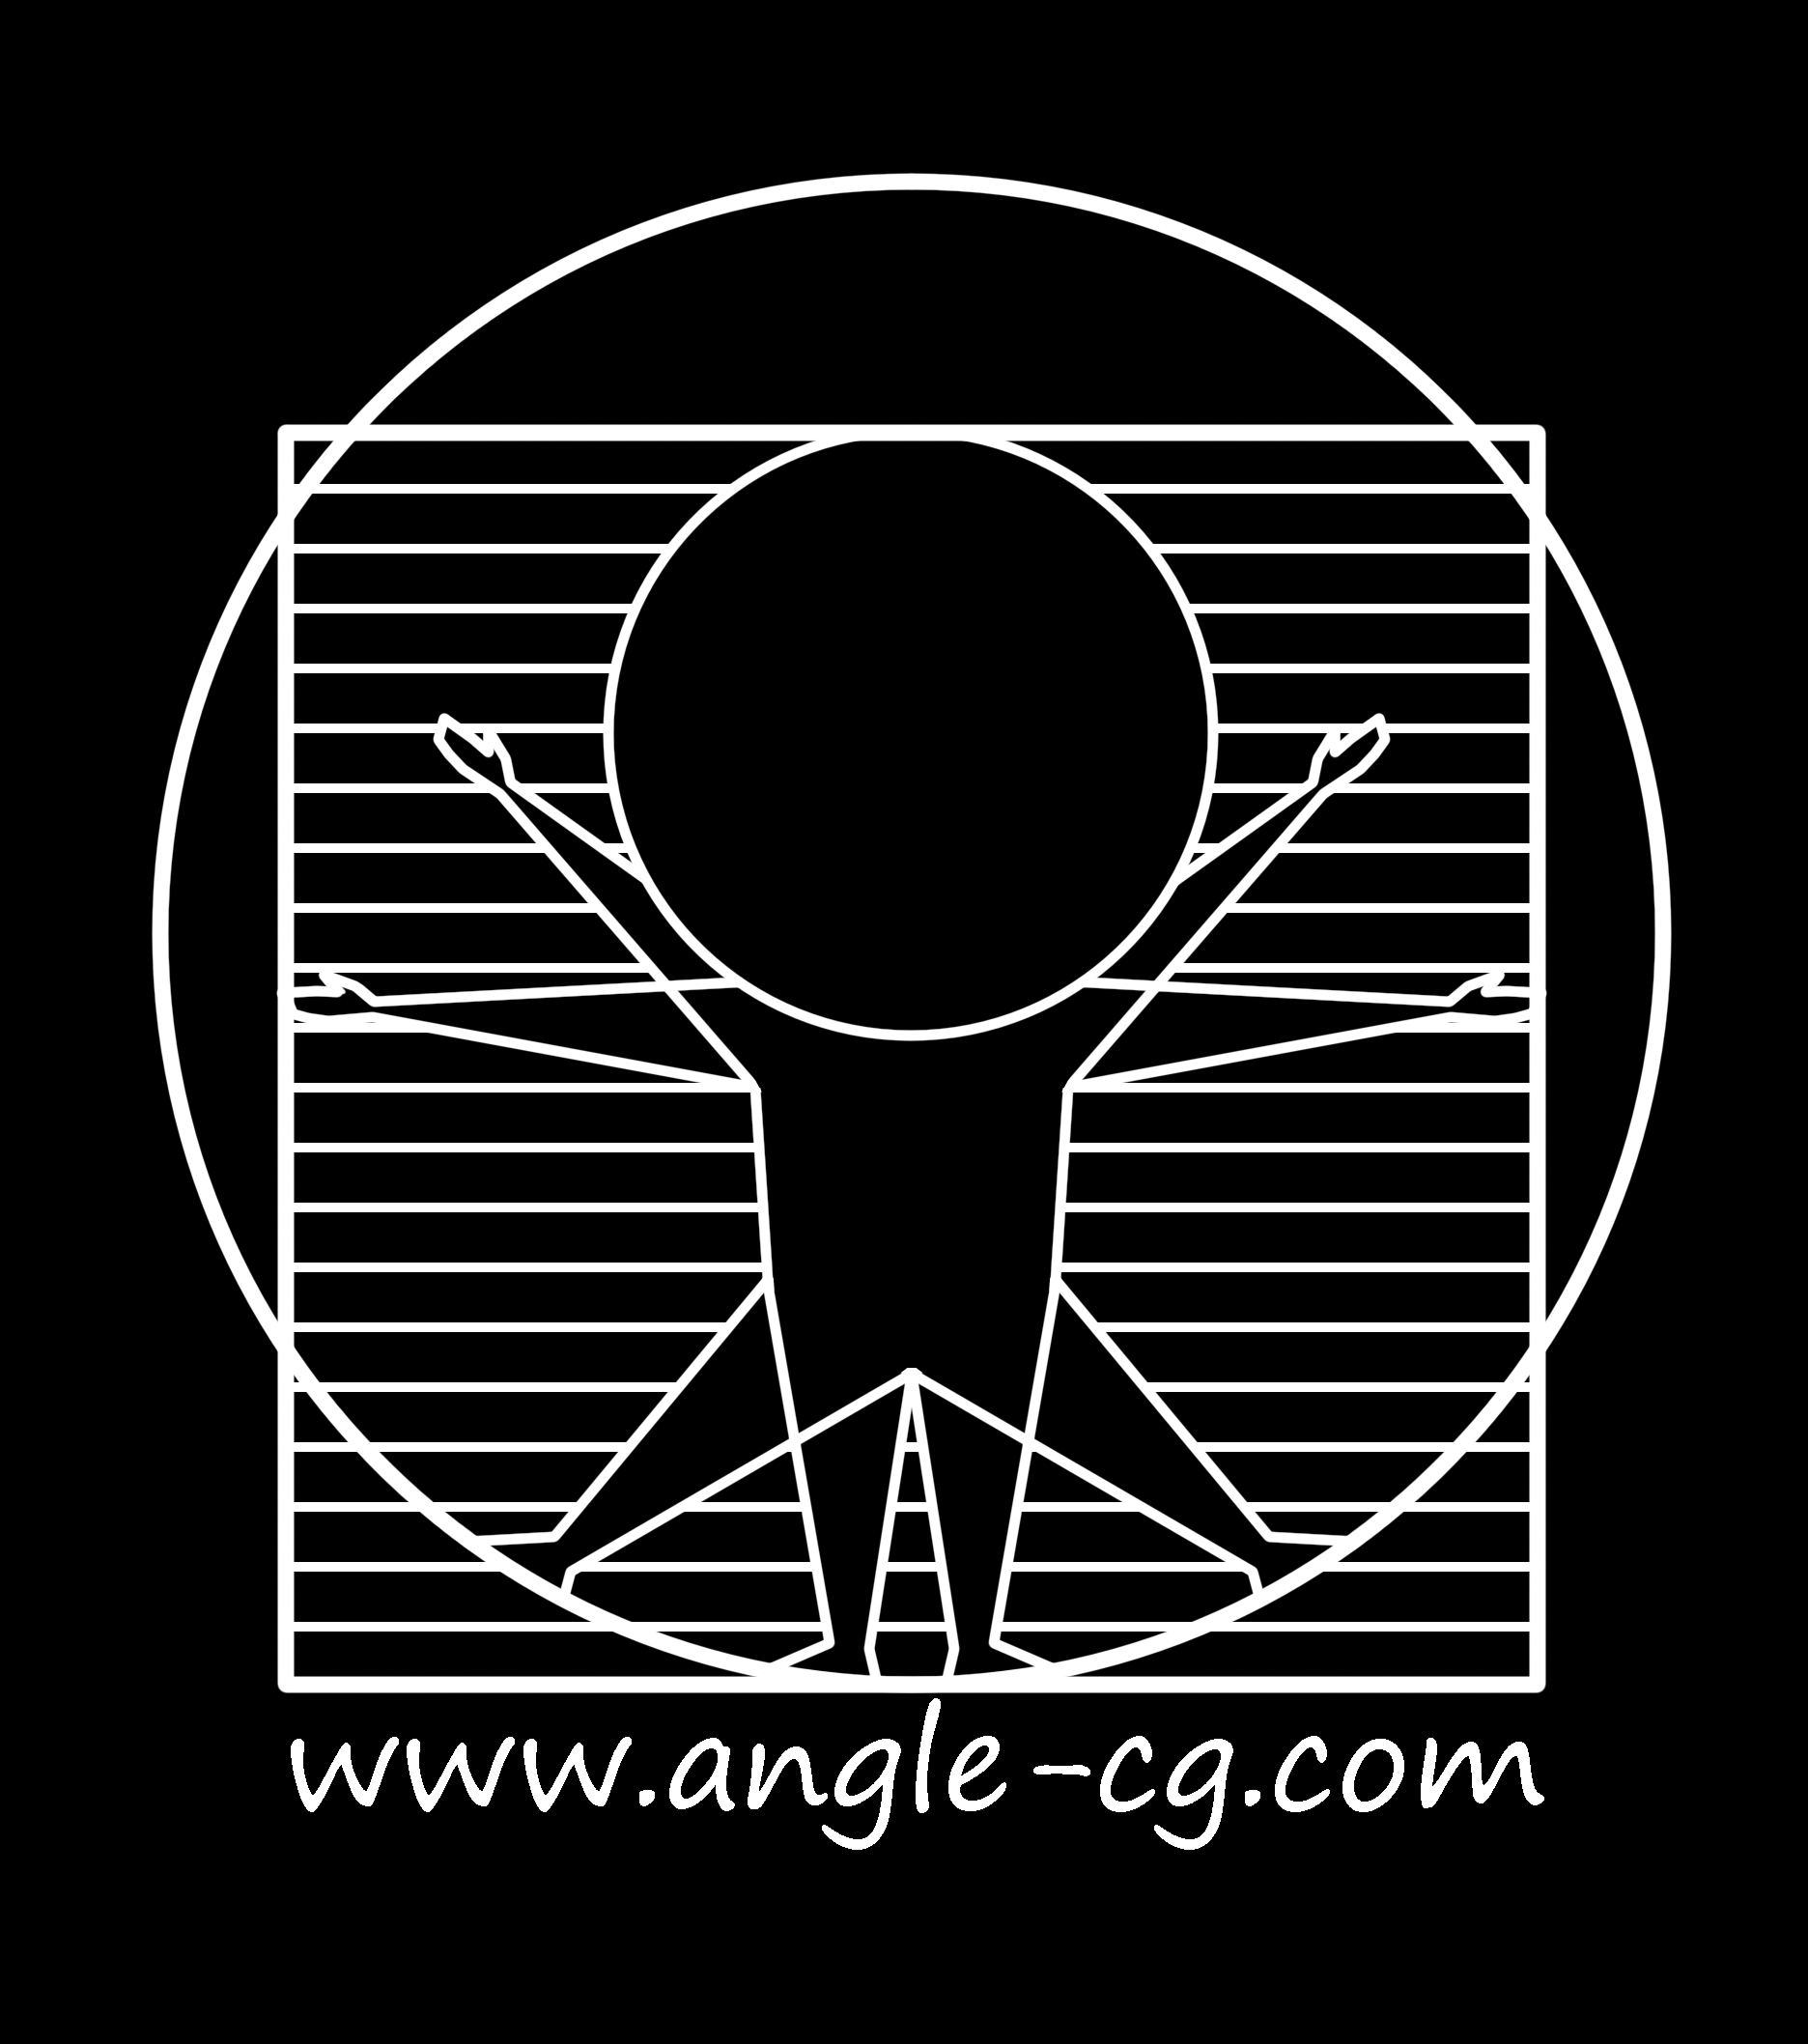 上海Angle-CG